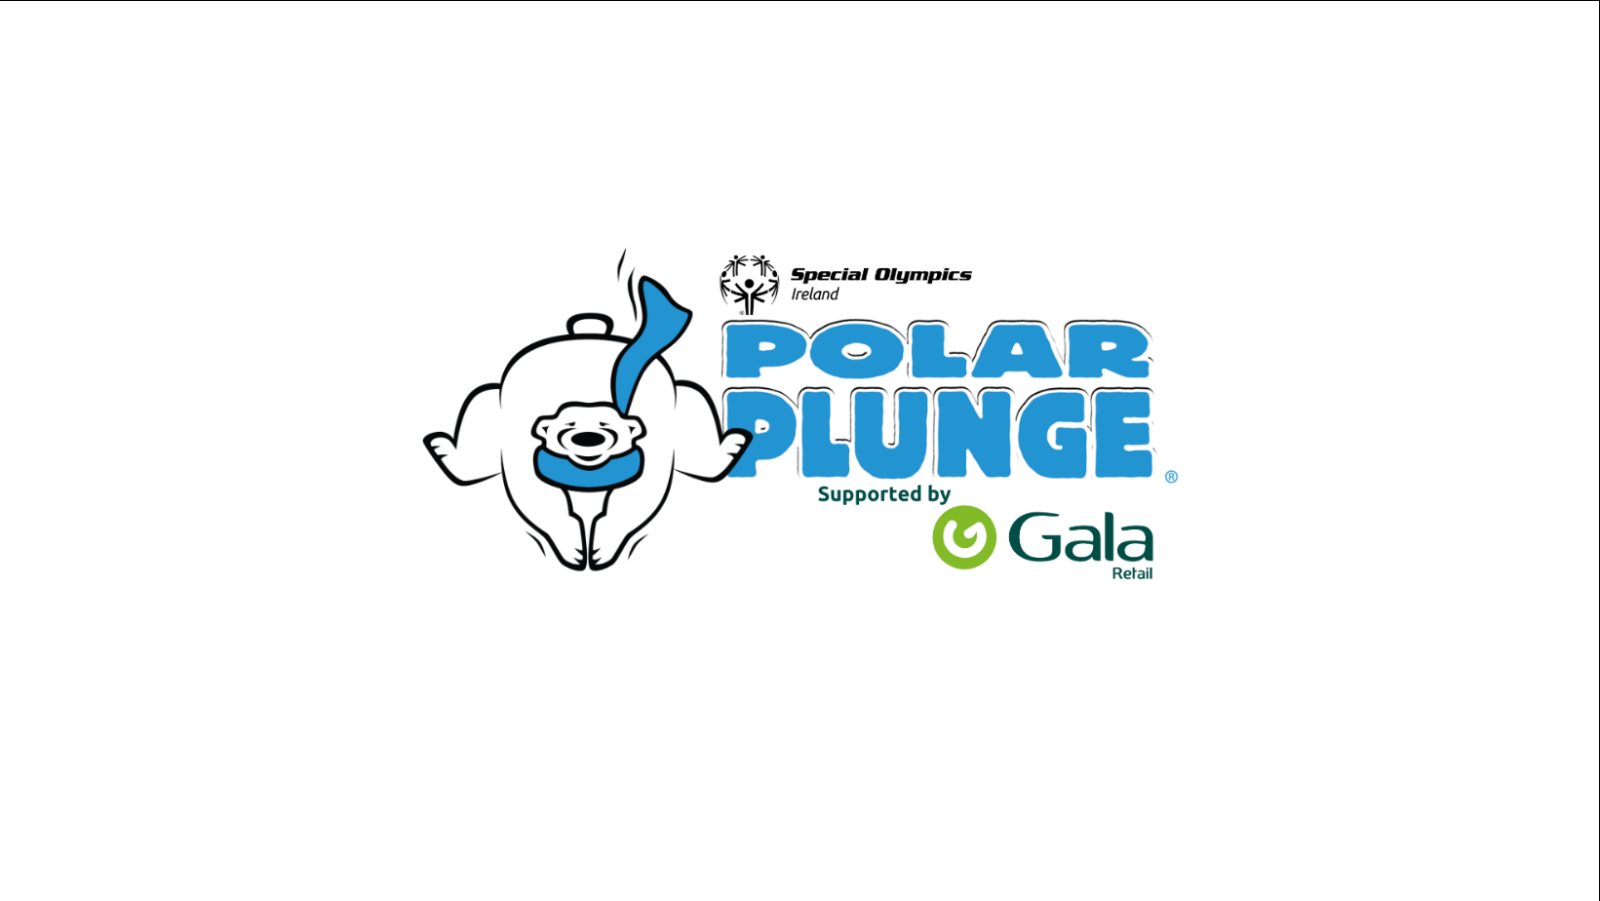 Polar plunge polar bear with Gala Retail logo